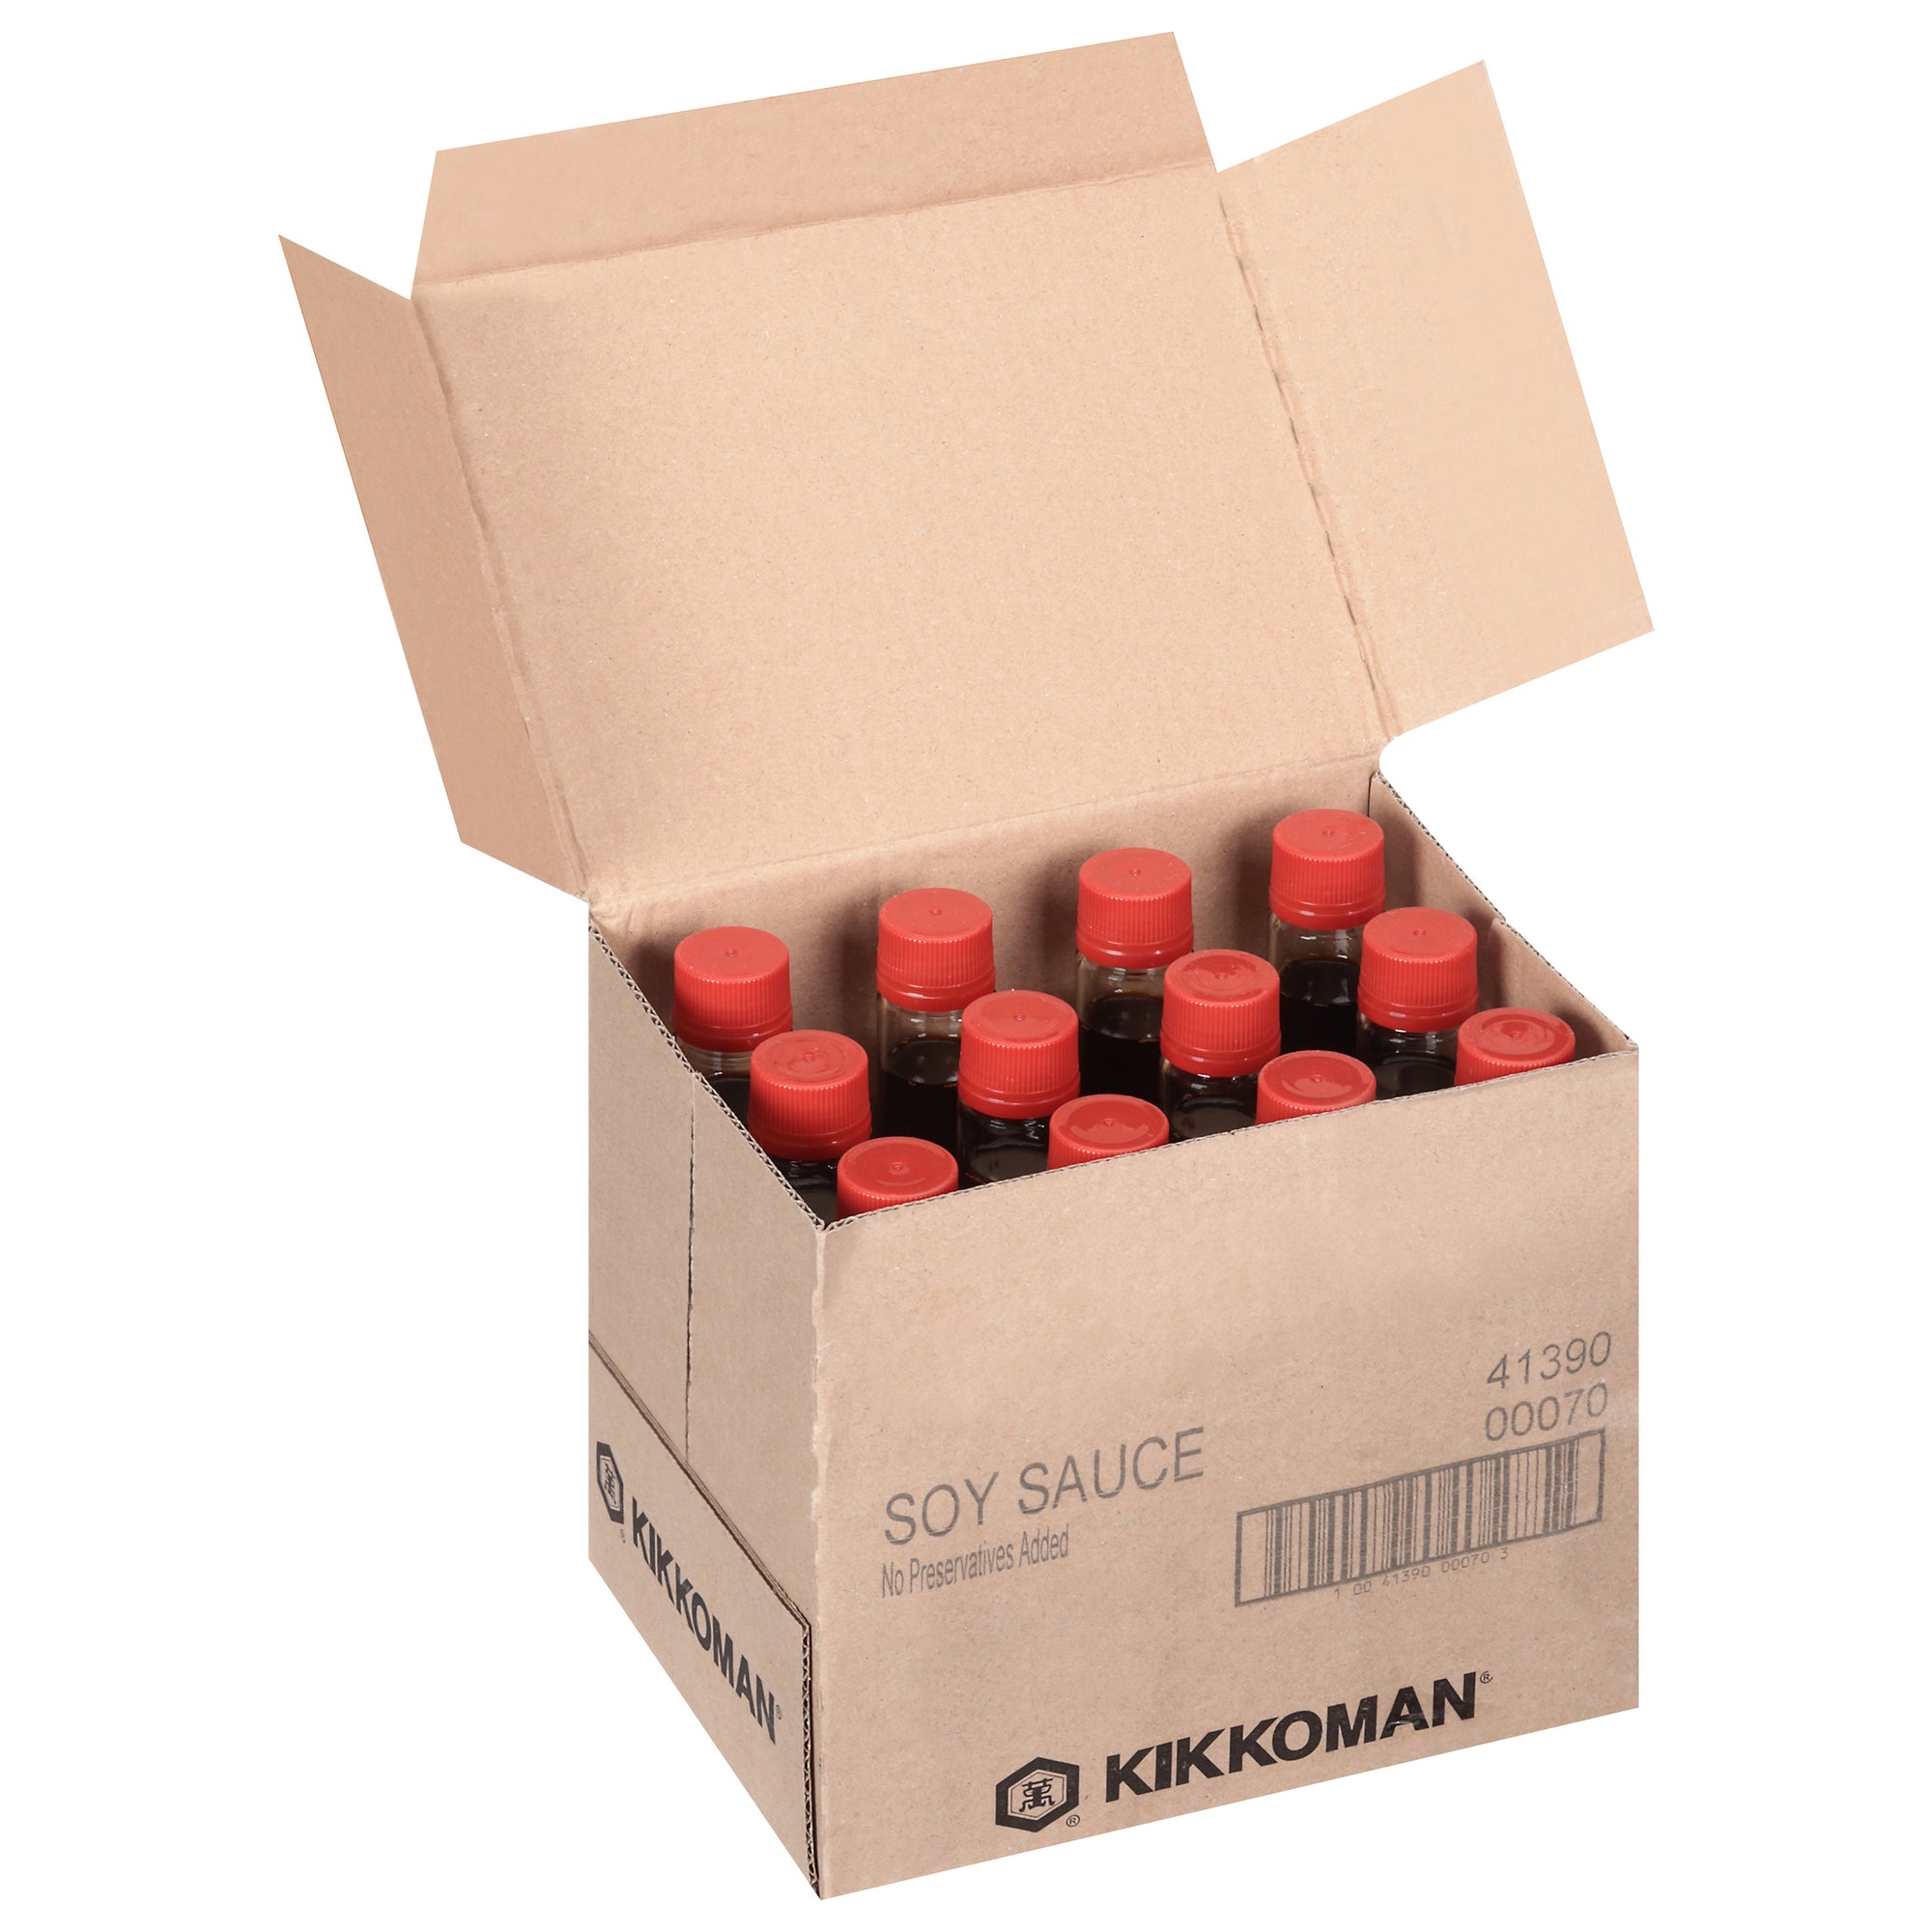 Kikkoman Soy Sauce 10 FL OZ - Case of 12